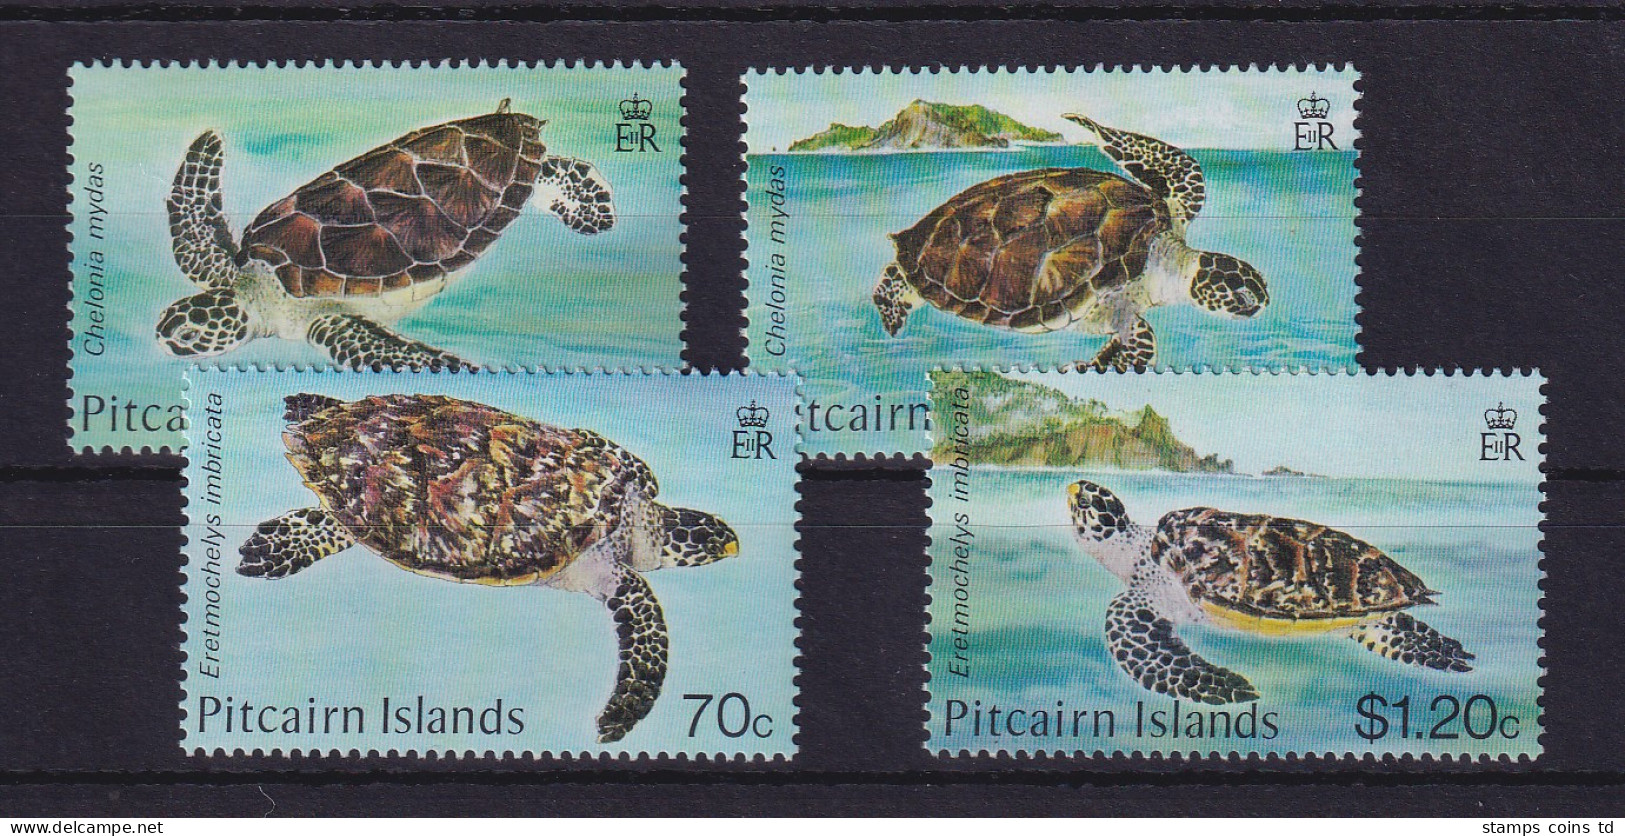 Pitcairn Islands 1986 Meeresschildkröten Mi.-Nr. 274-277 Postfrisch ** - Pitcairn Islands